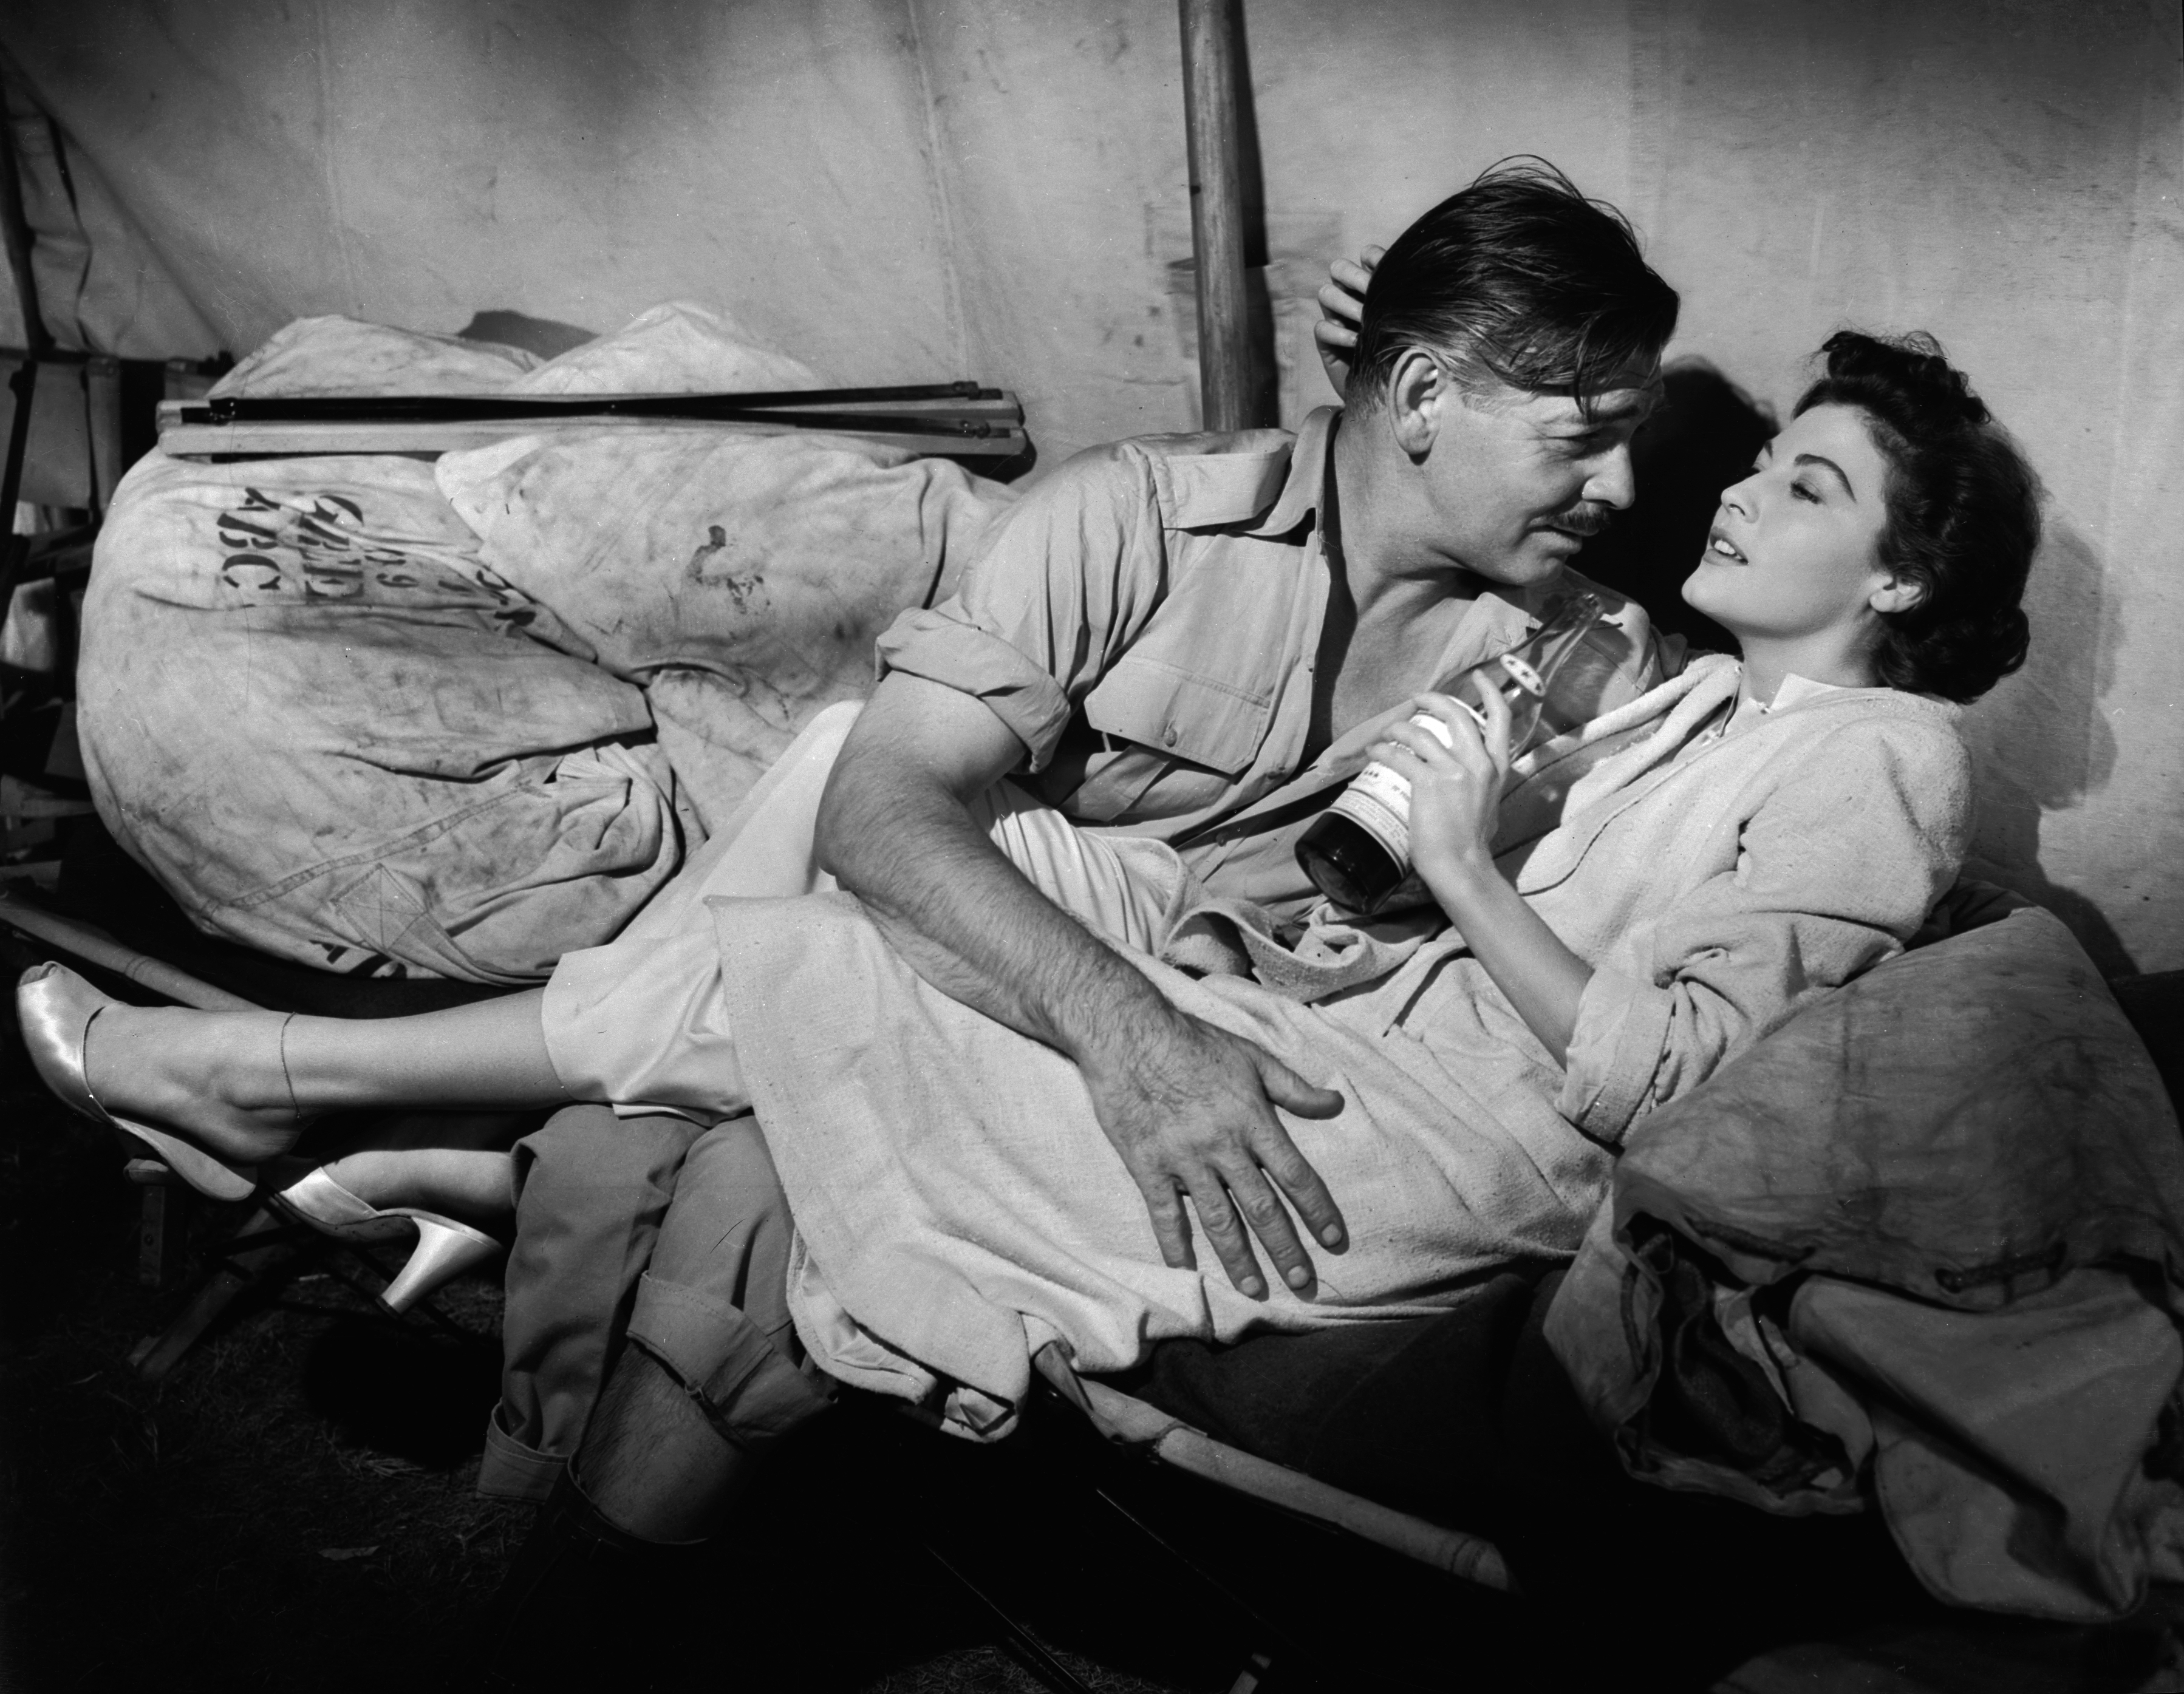 Still of Clark Gable and Ava Gardner in Mogambo (1953)